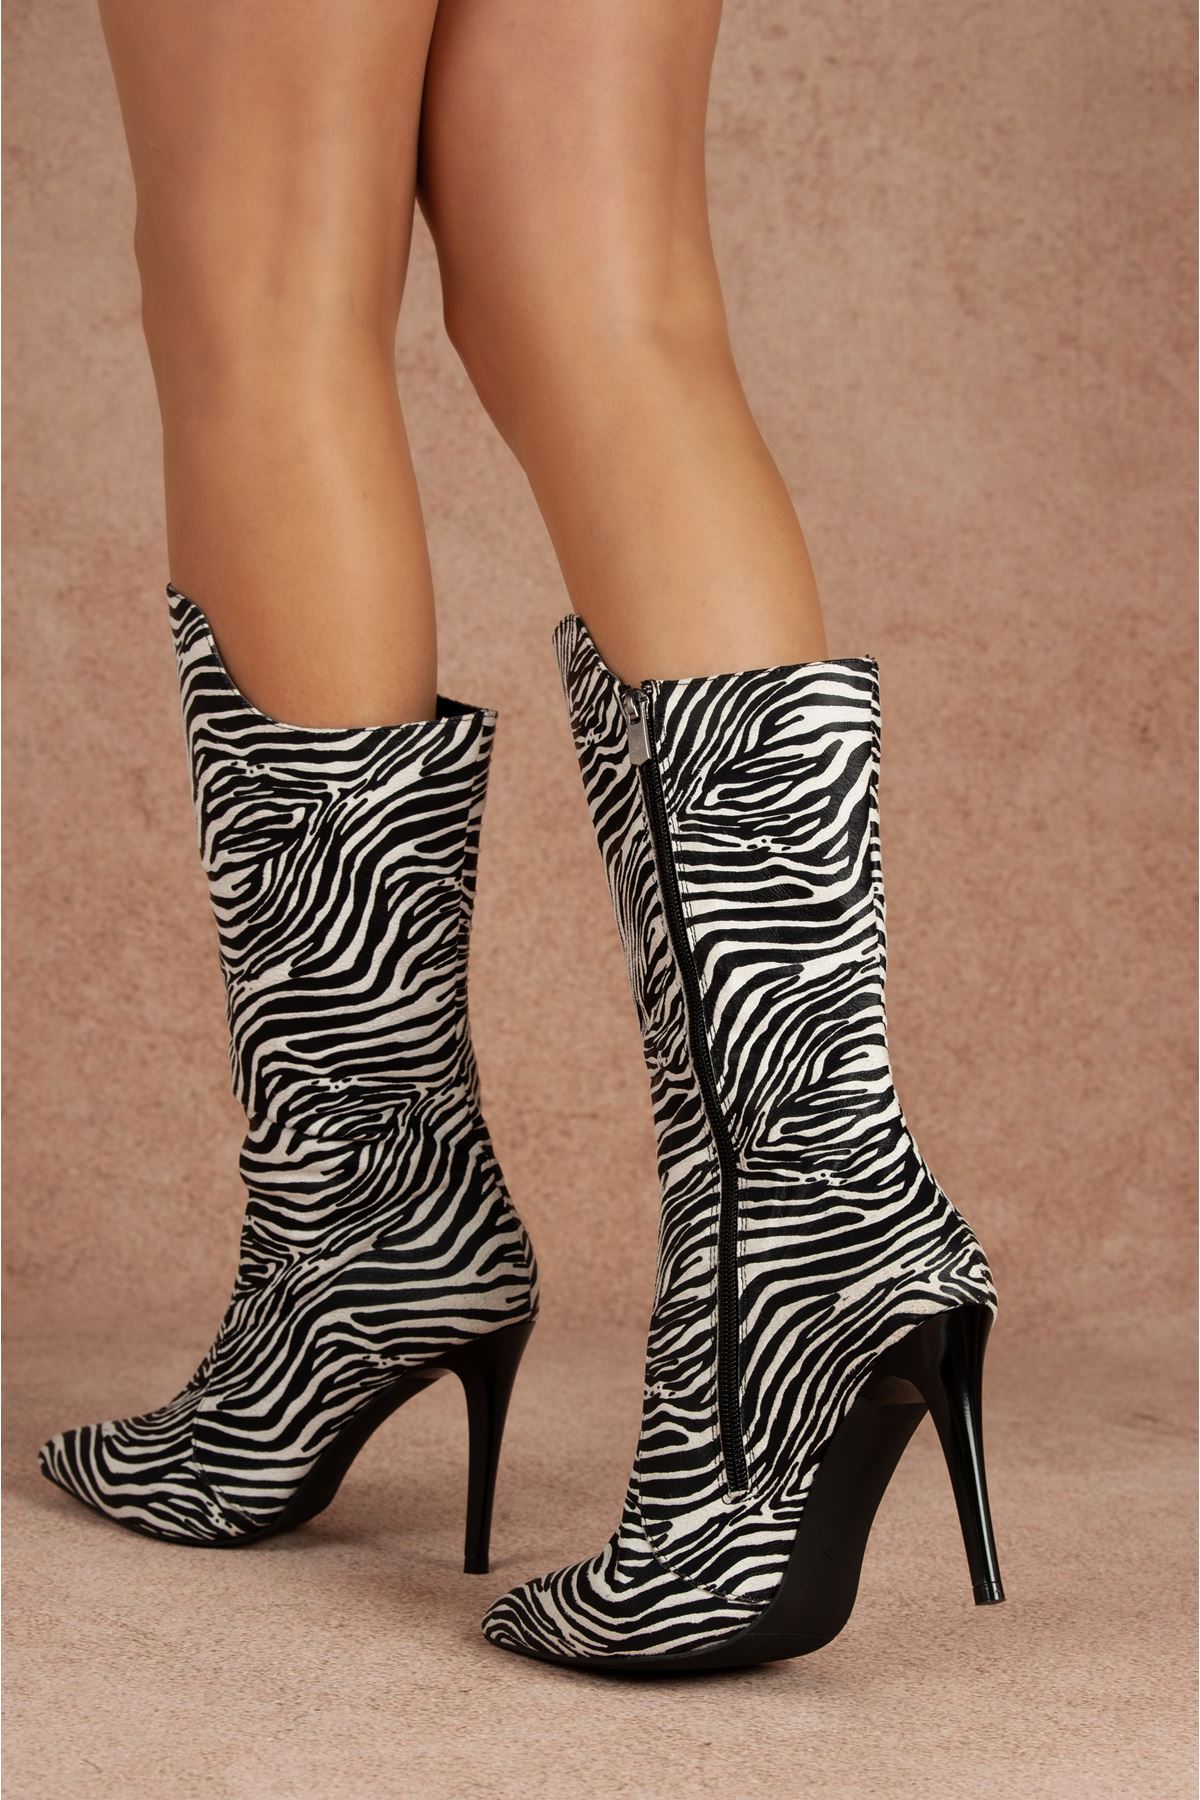 Şıpıdık Zebra Topuklu Kadın Ayakkabı